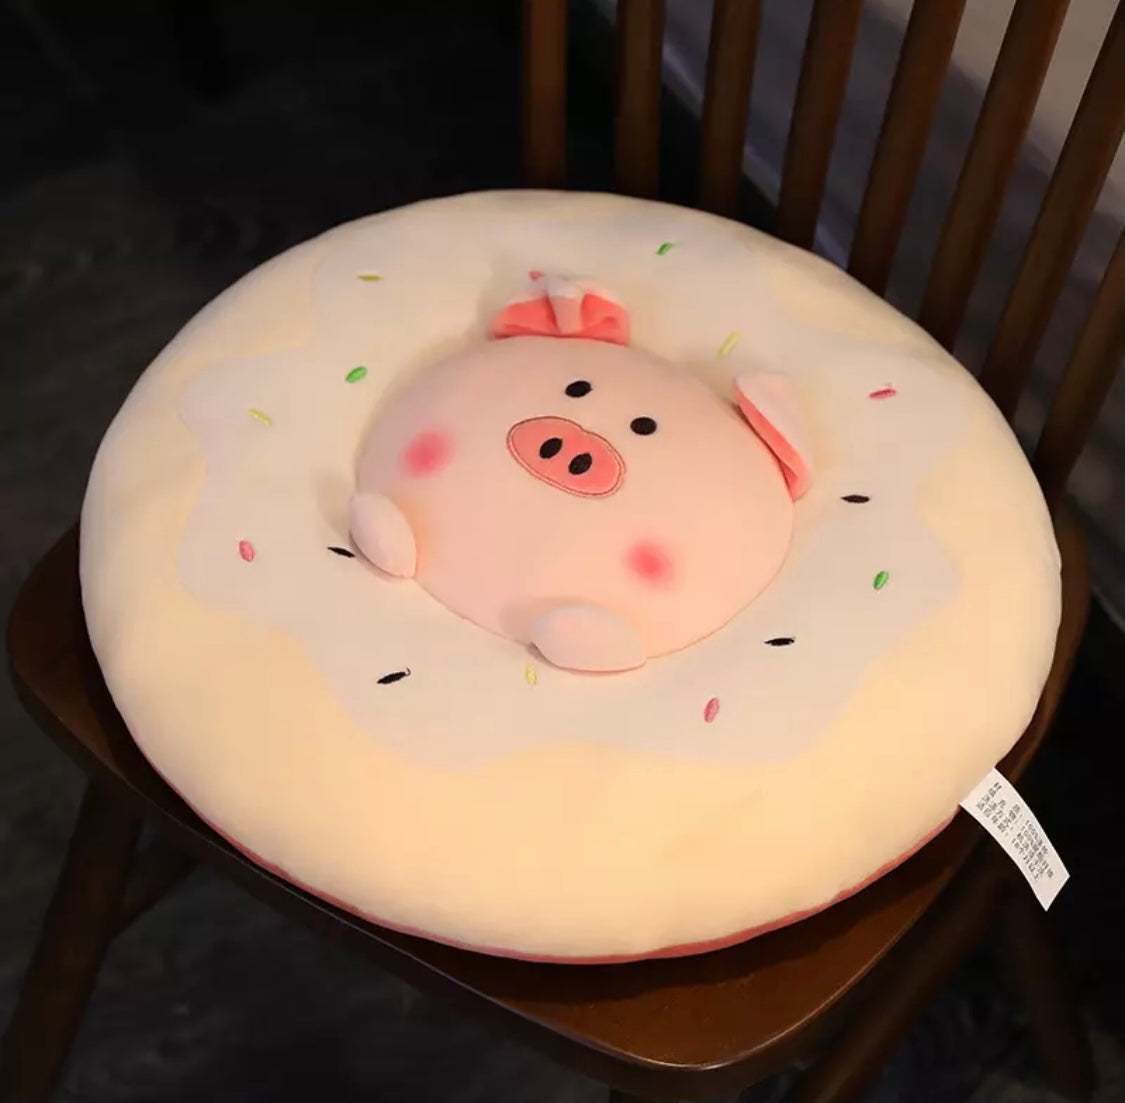 Kawaii Animals Plush Donut Cushion